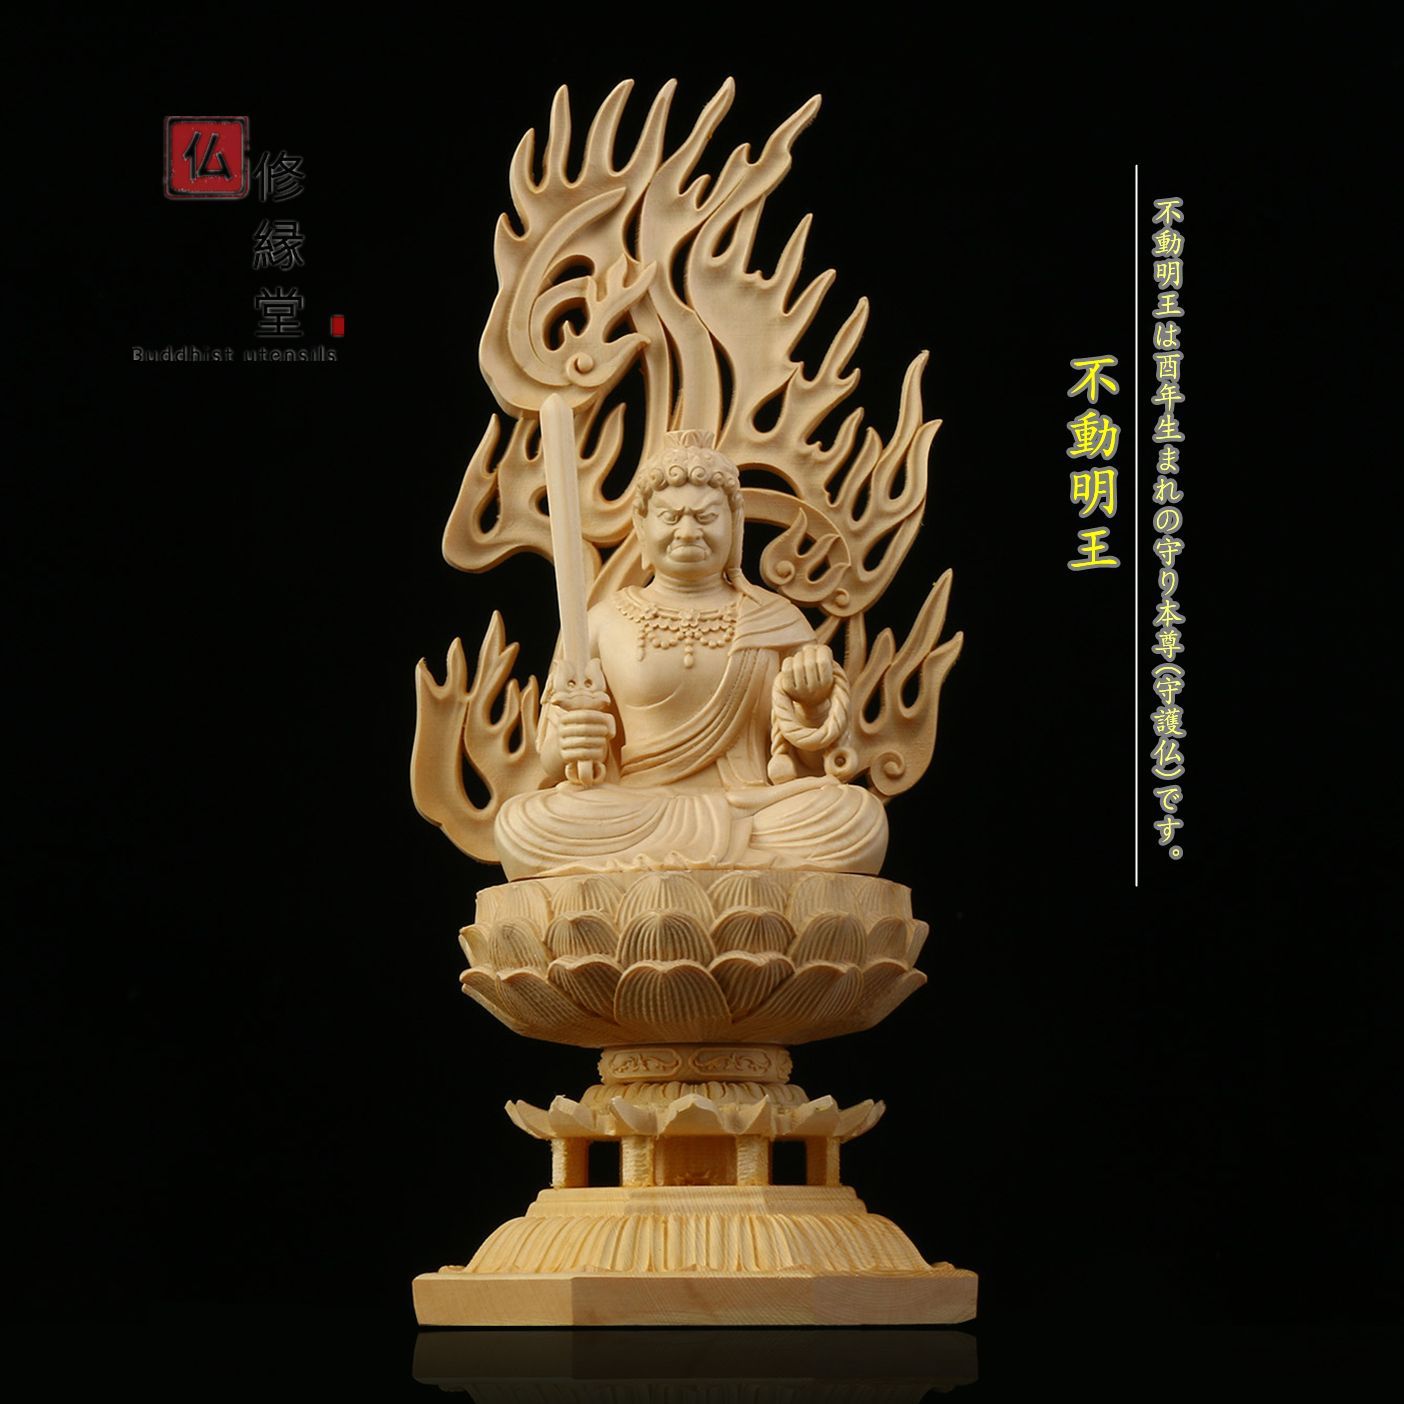 木彫仏像 虚空蔵菩薩座像 彫刻 一刀彫 天然木檜材